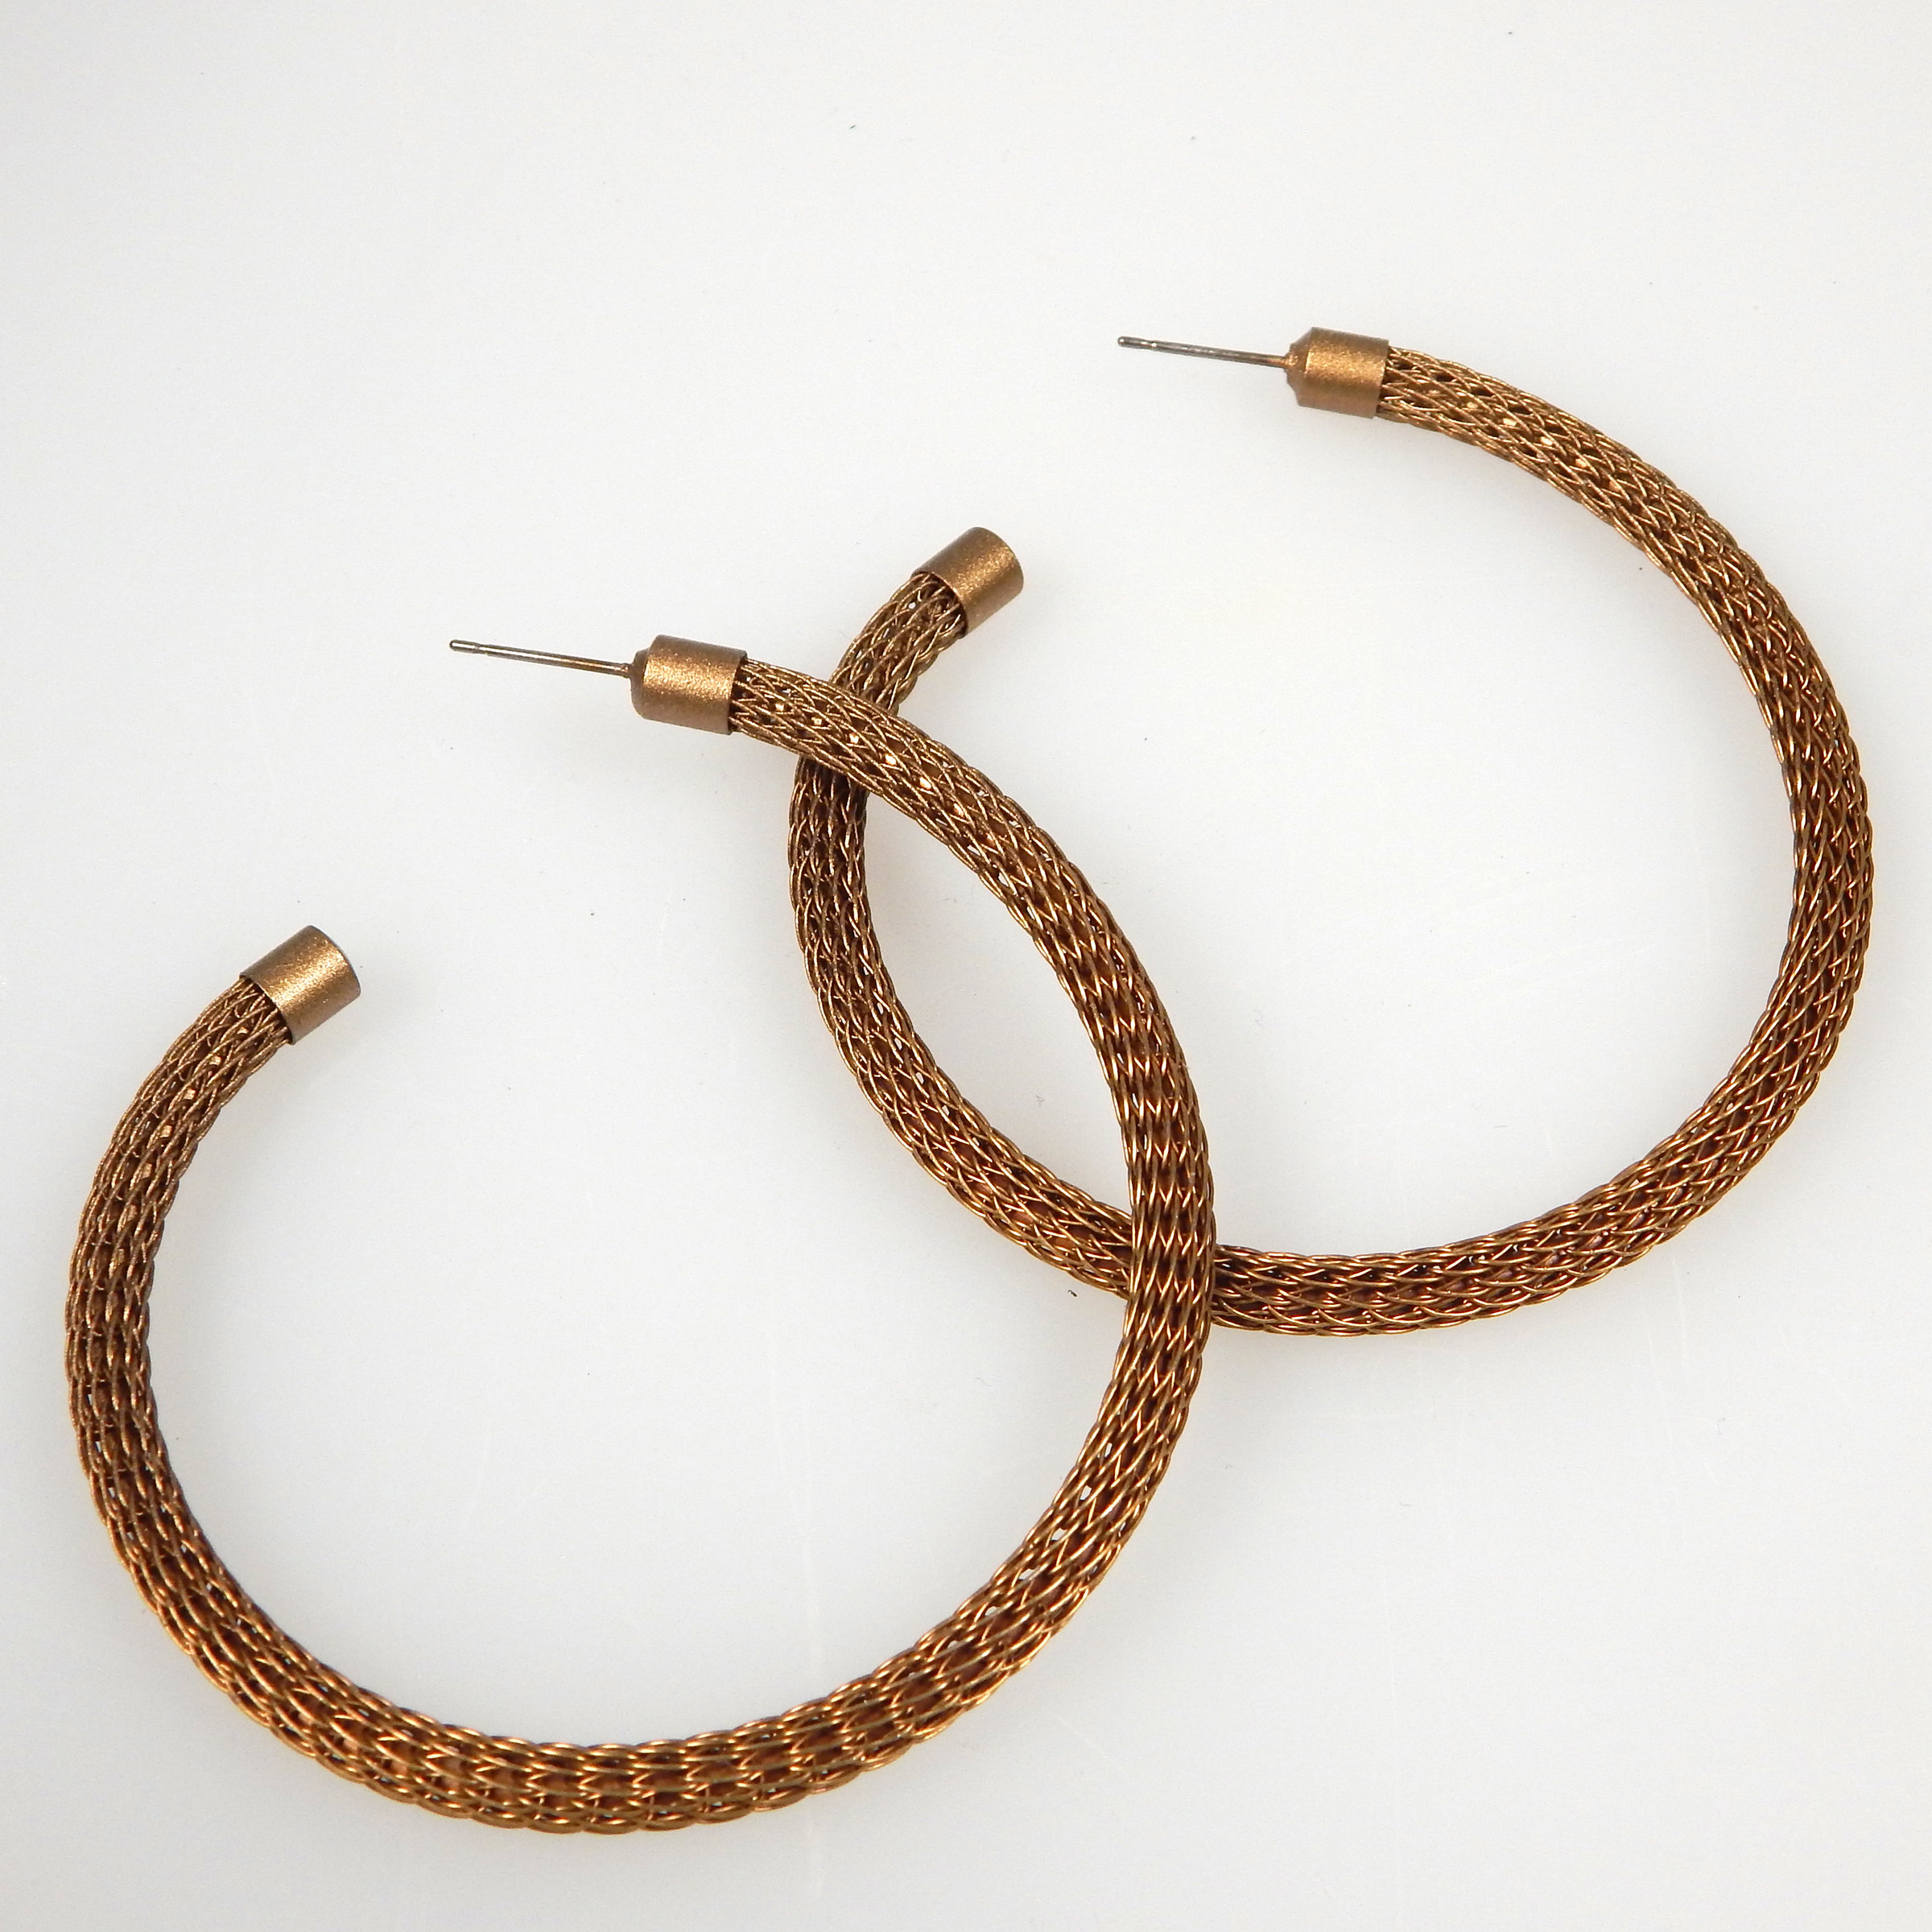 Copper Teardrop Hoop Earrings Hypoallergenic Antique Finish 3 Sizes